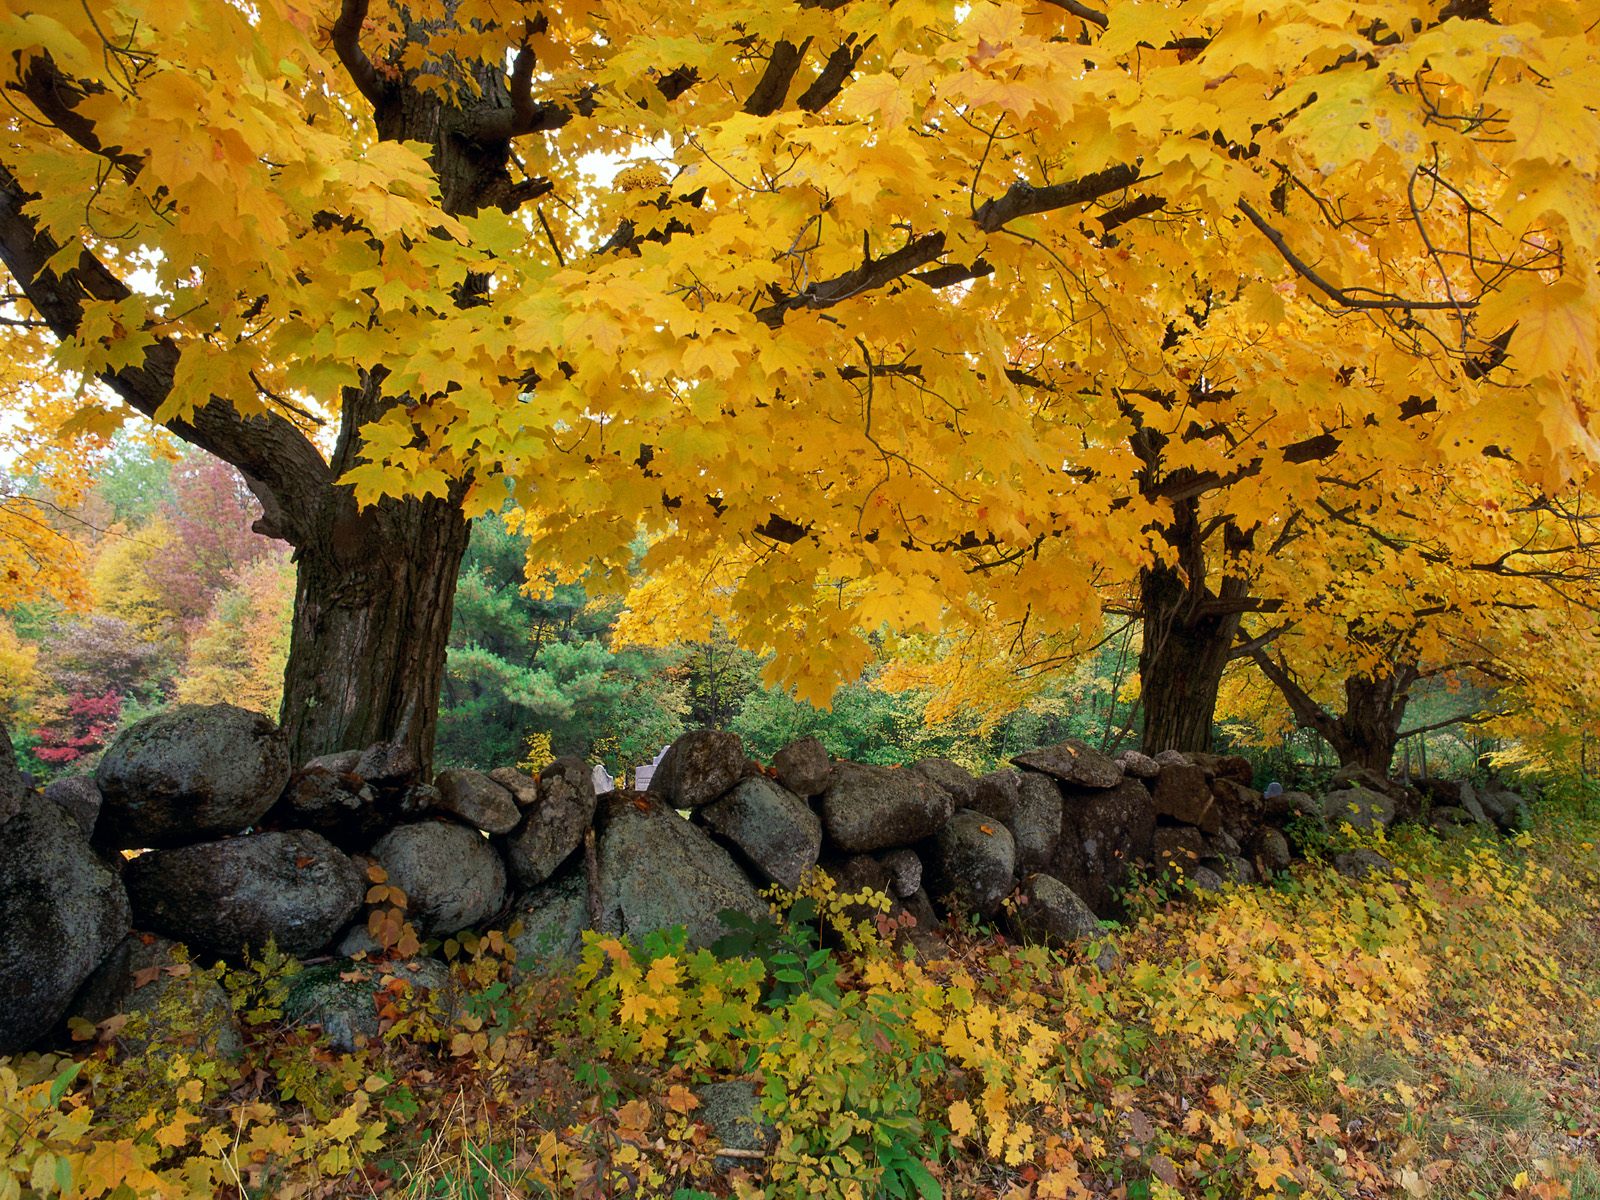 Wallpaperofflowers Gambar Pemandangan Musim Gugur Yang Sangat Indah